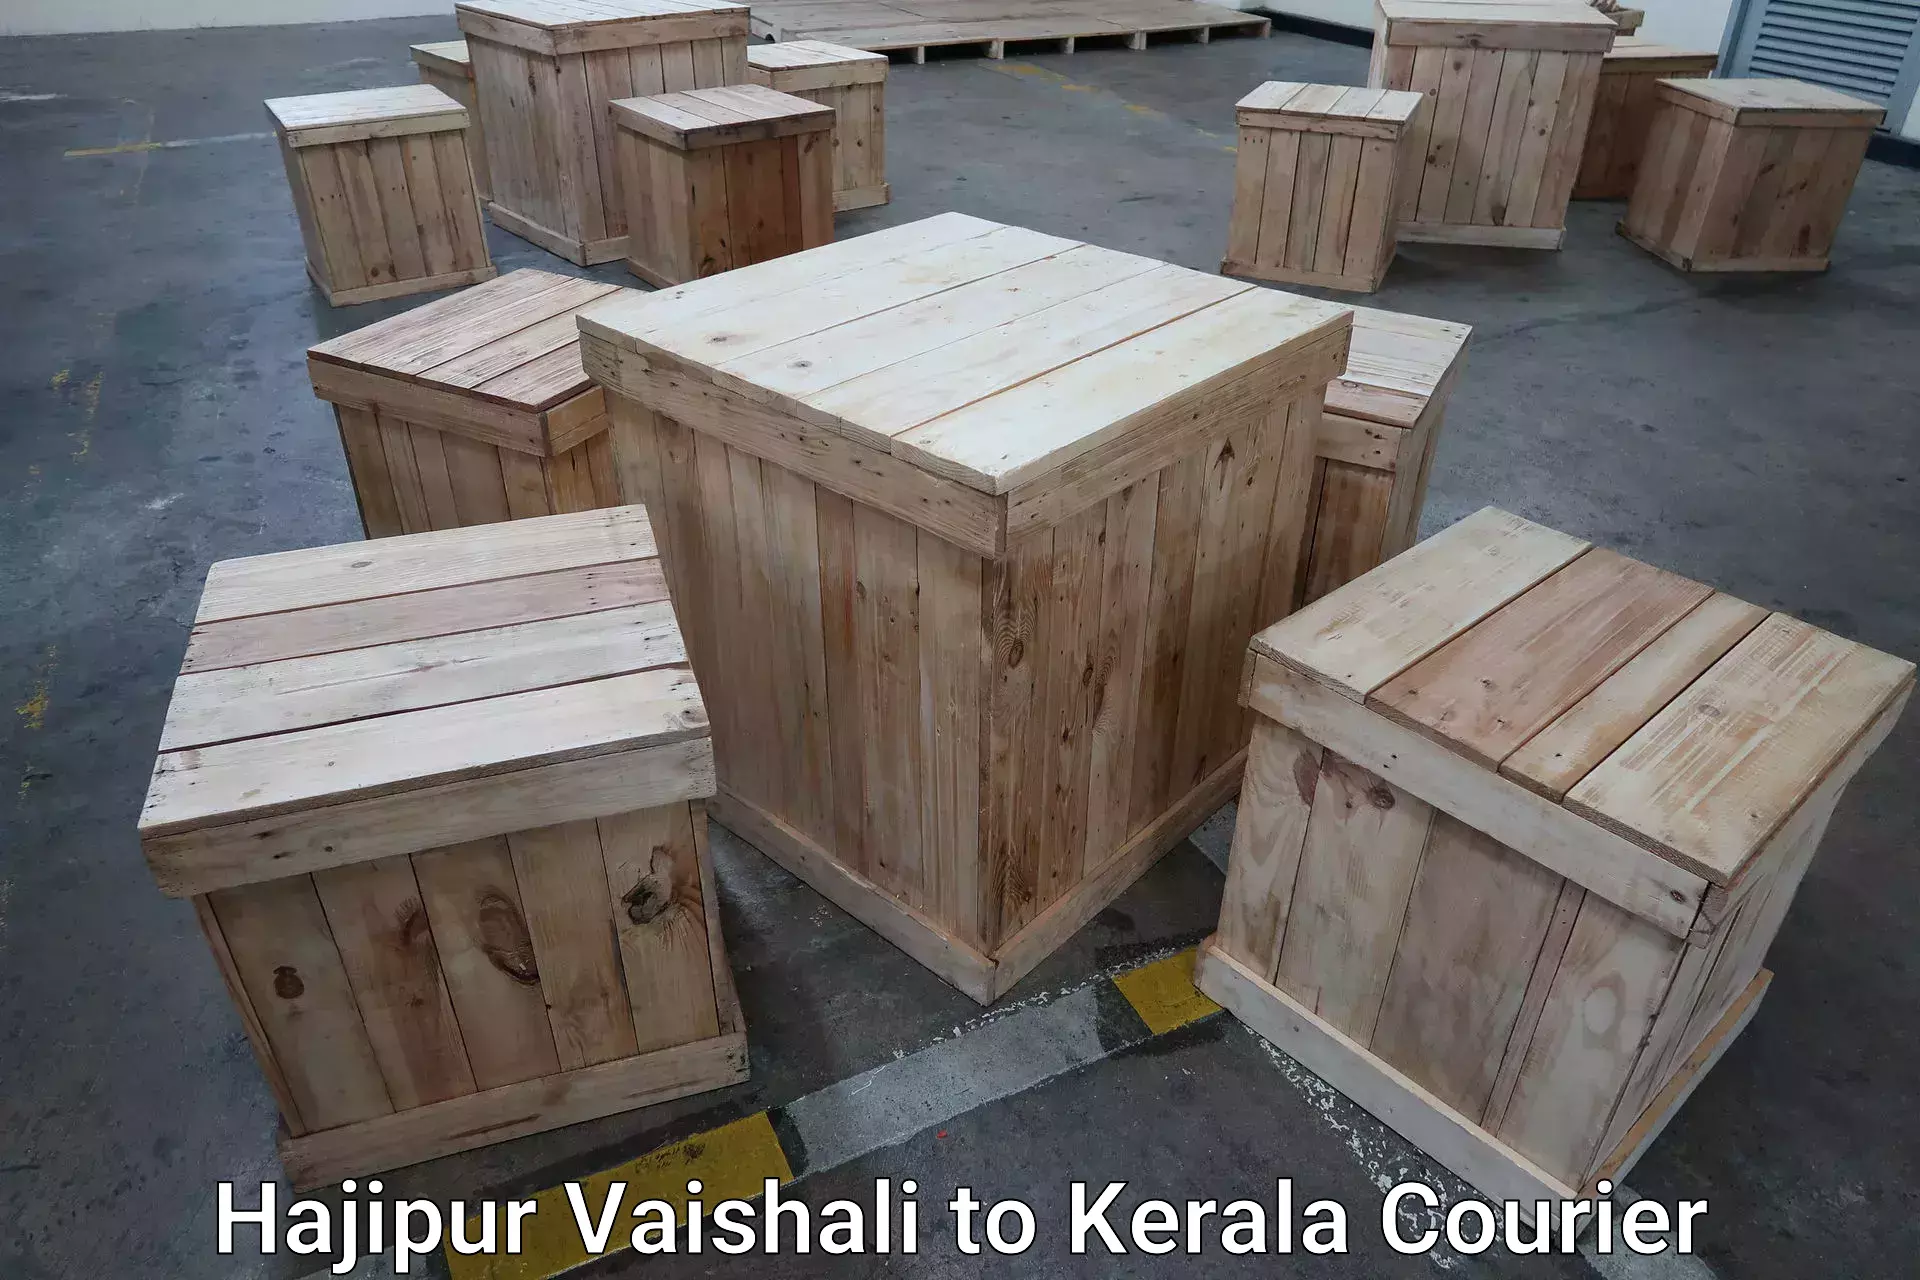 Luggage delivery providers Hajipur Vaishali to Kerala